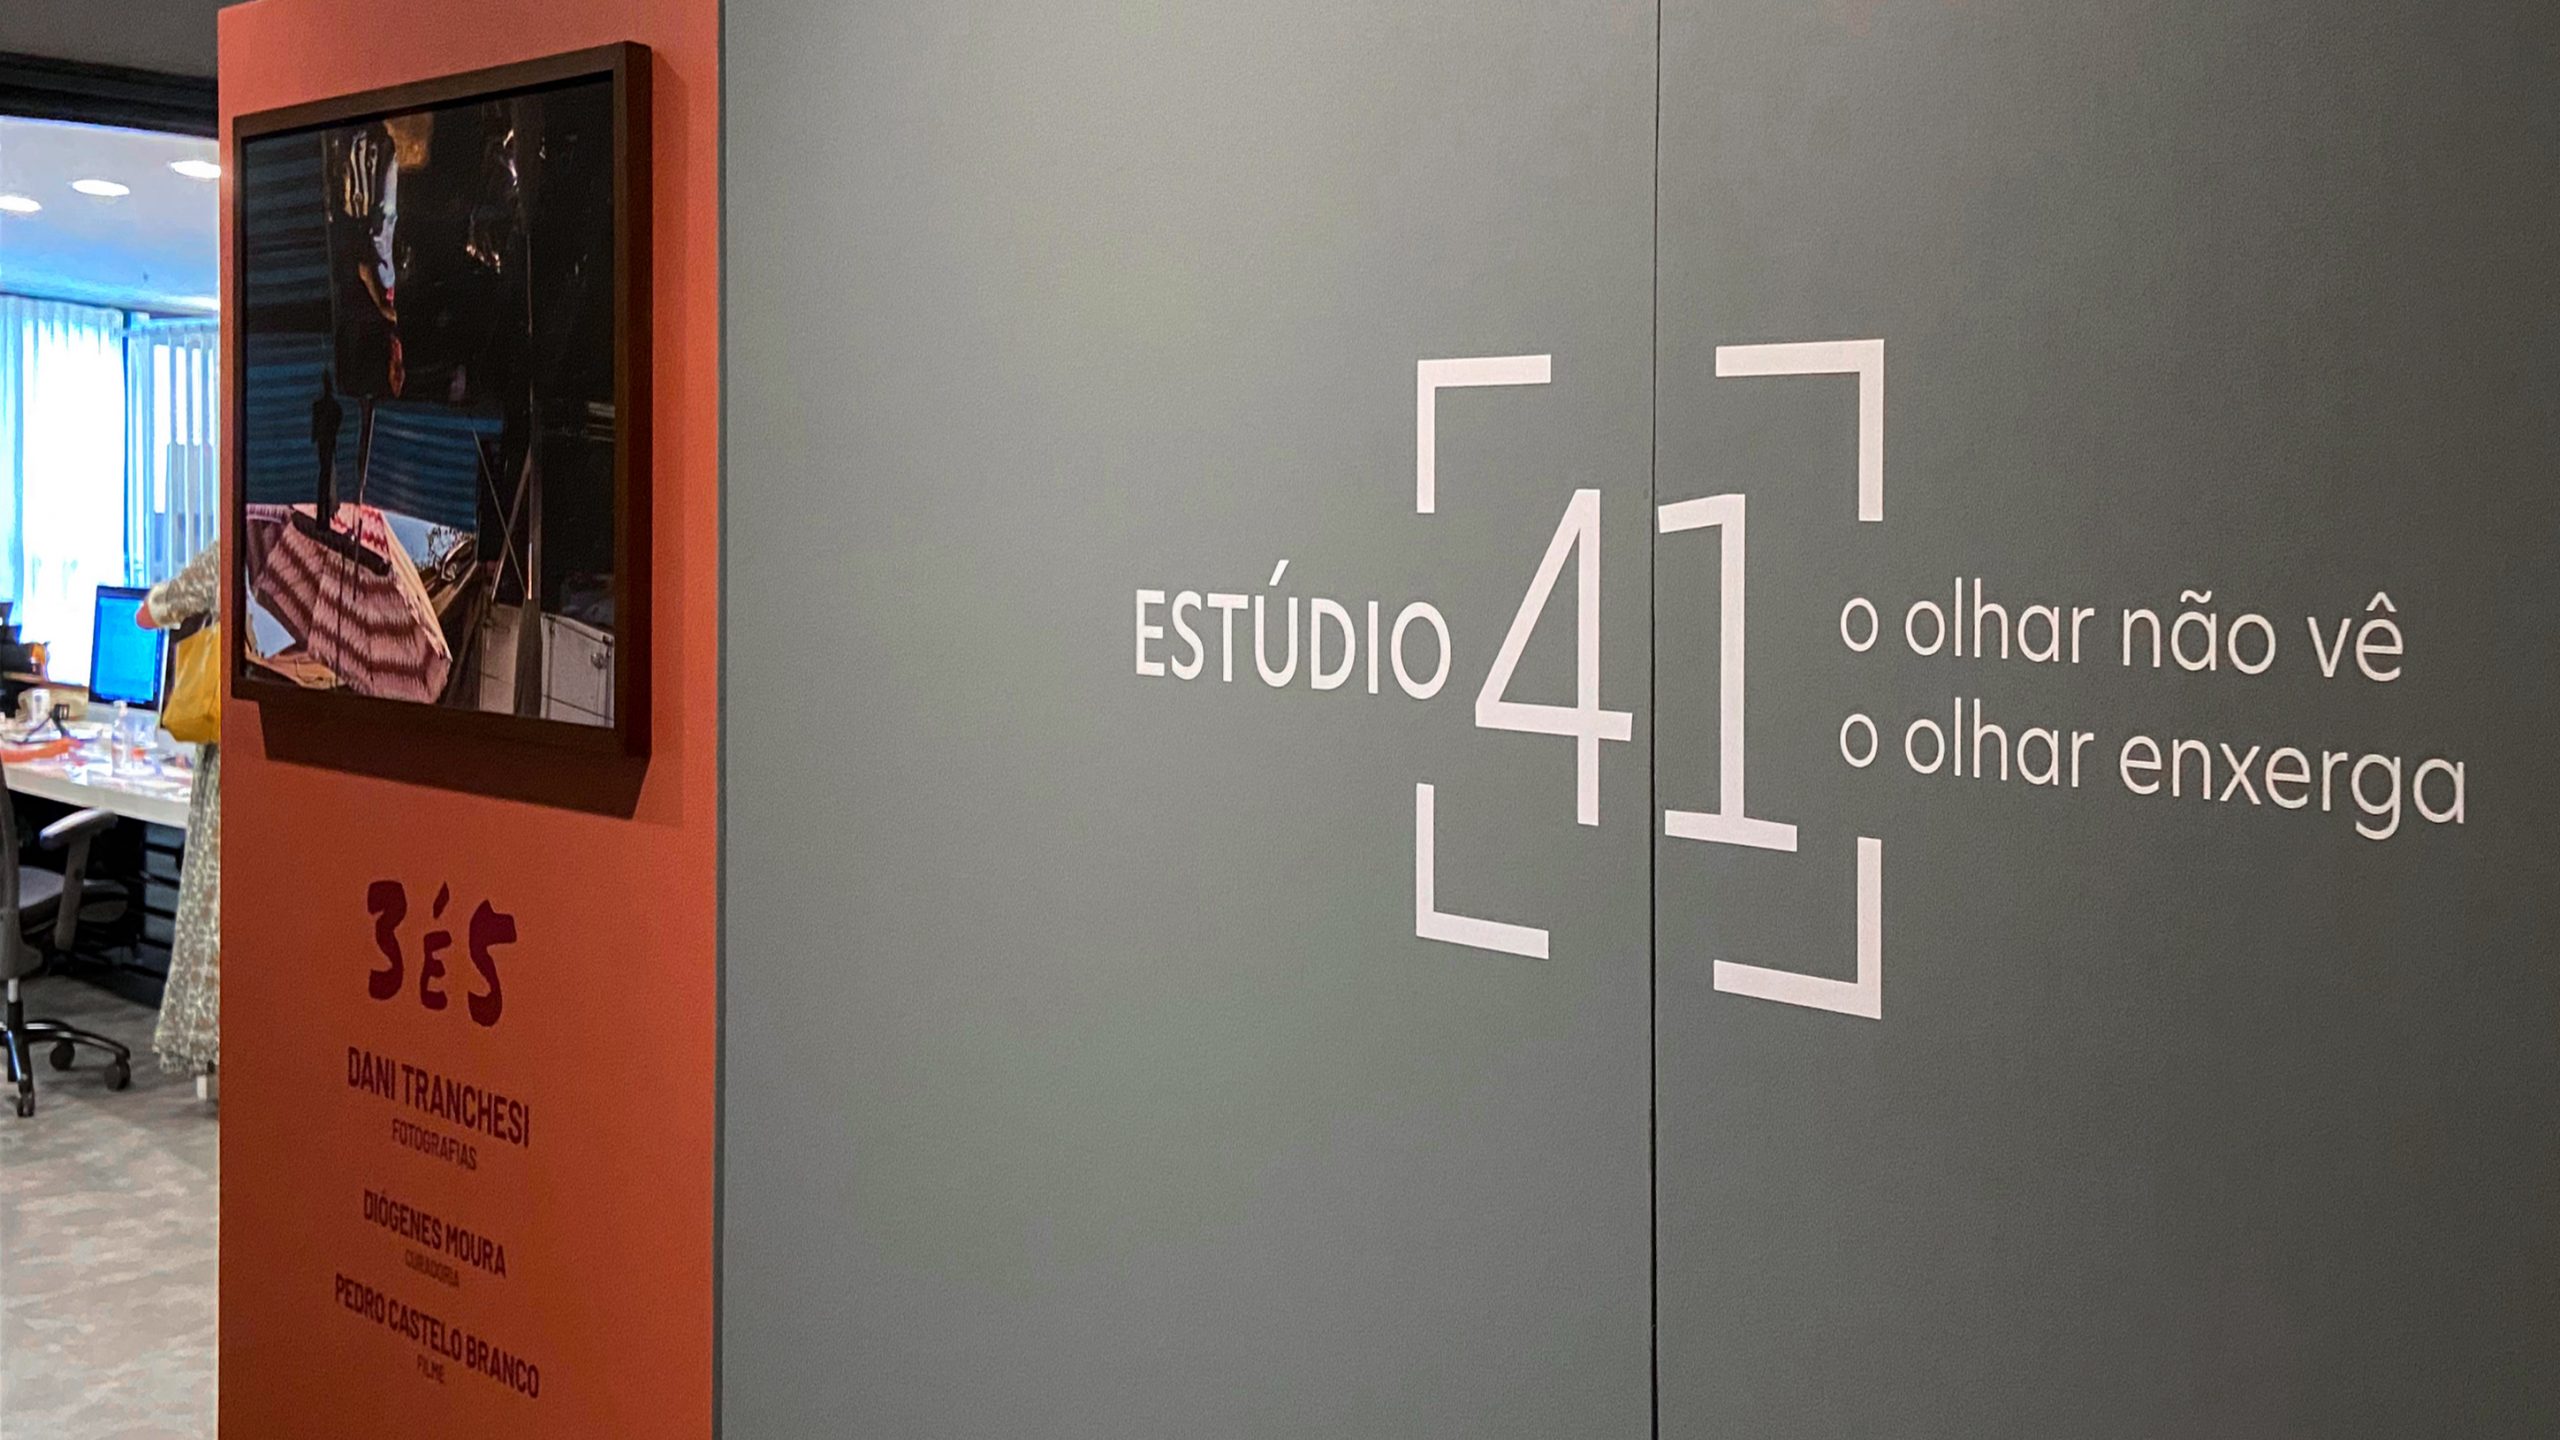 Caminhos criativos que buscam traduzir design e identidade, saiba como o olhar estratégico do CJ31 colaborou na inauguração do novo Estúdio de Dani Tranchesi e Paula Rocha.